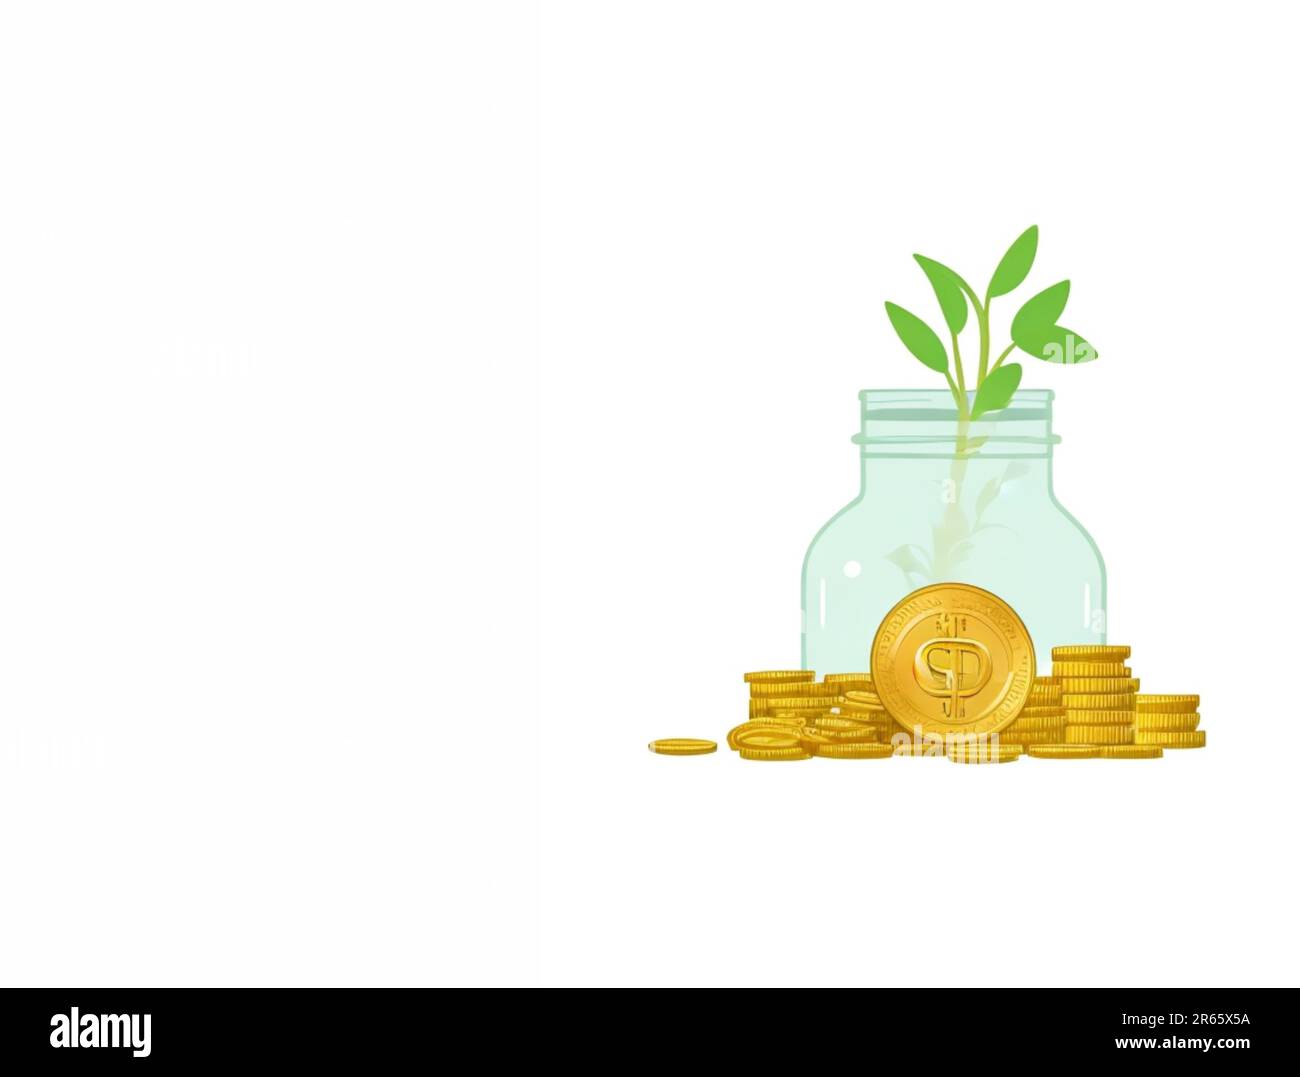 Risparmio di denaro business concept con piggy bank, albero, monete, denaro, copia spazio su sfondo bianco isolato Foto Stock